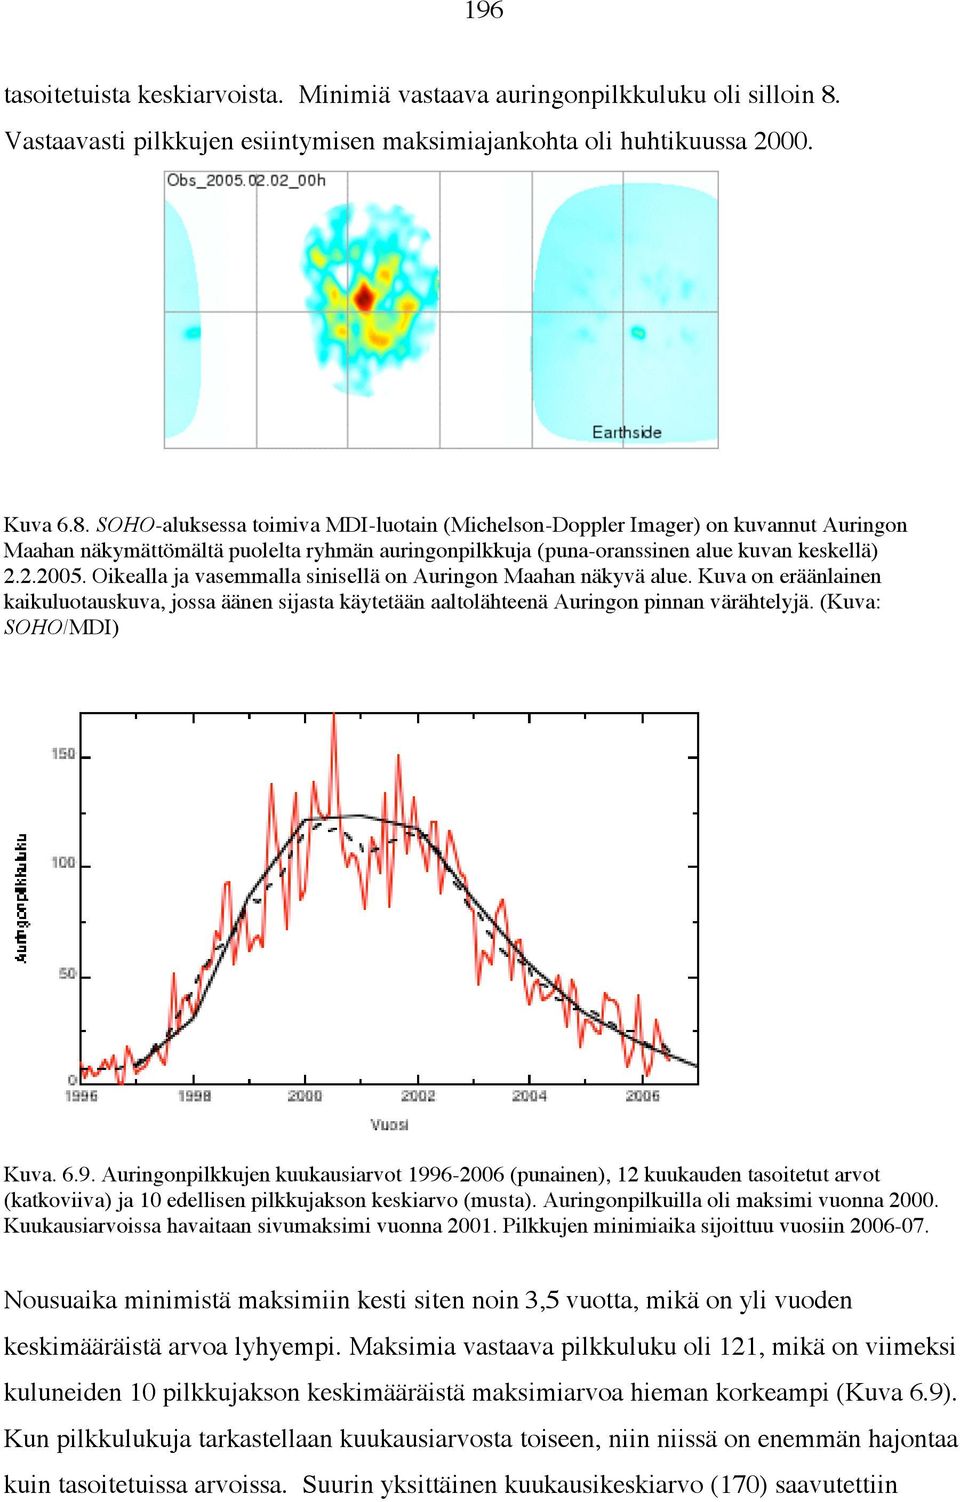 SOHO-aluksessa toimiva MDI-luotain (Michelson-Doppler Imager) on kuvannut Auringon Maahan näkymättömältä puolelta ryhmän auringonpilkkuja (puna-oranssinen alue kuvan keskellä) 2.2.2005.